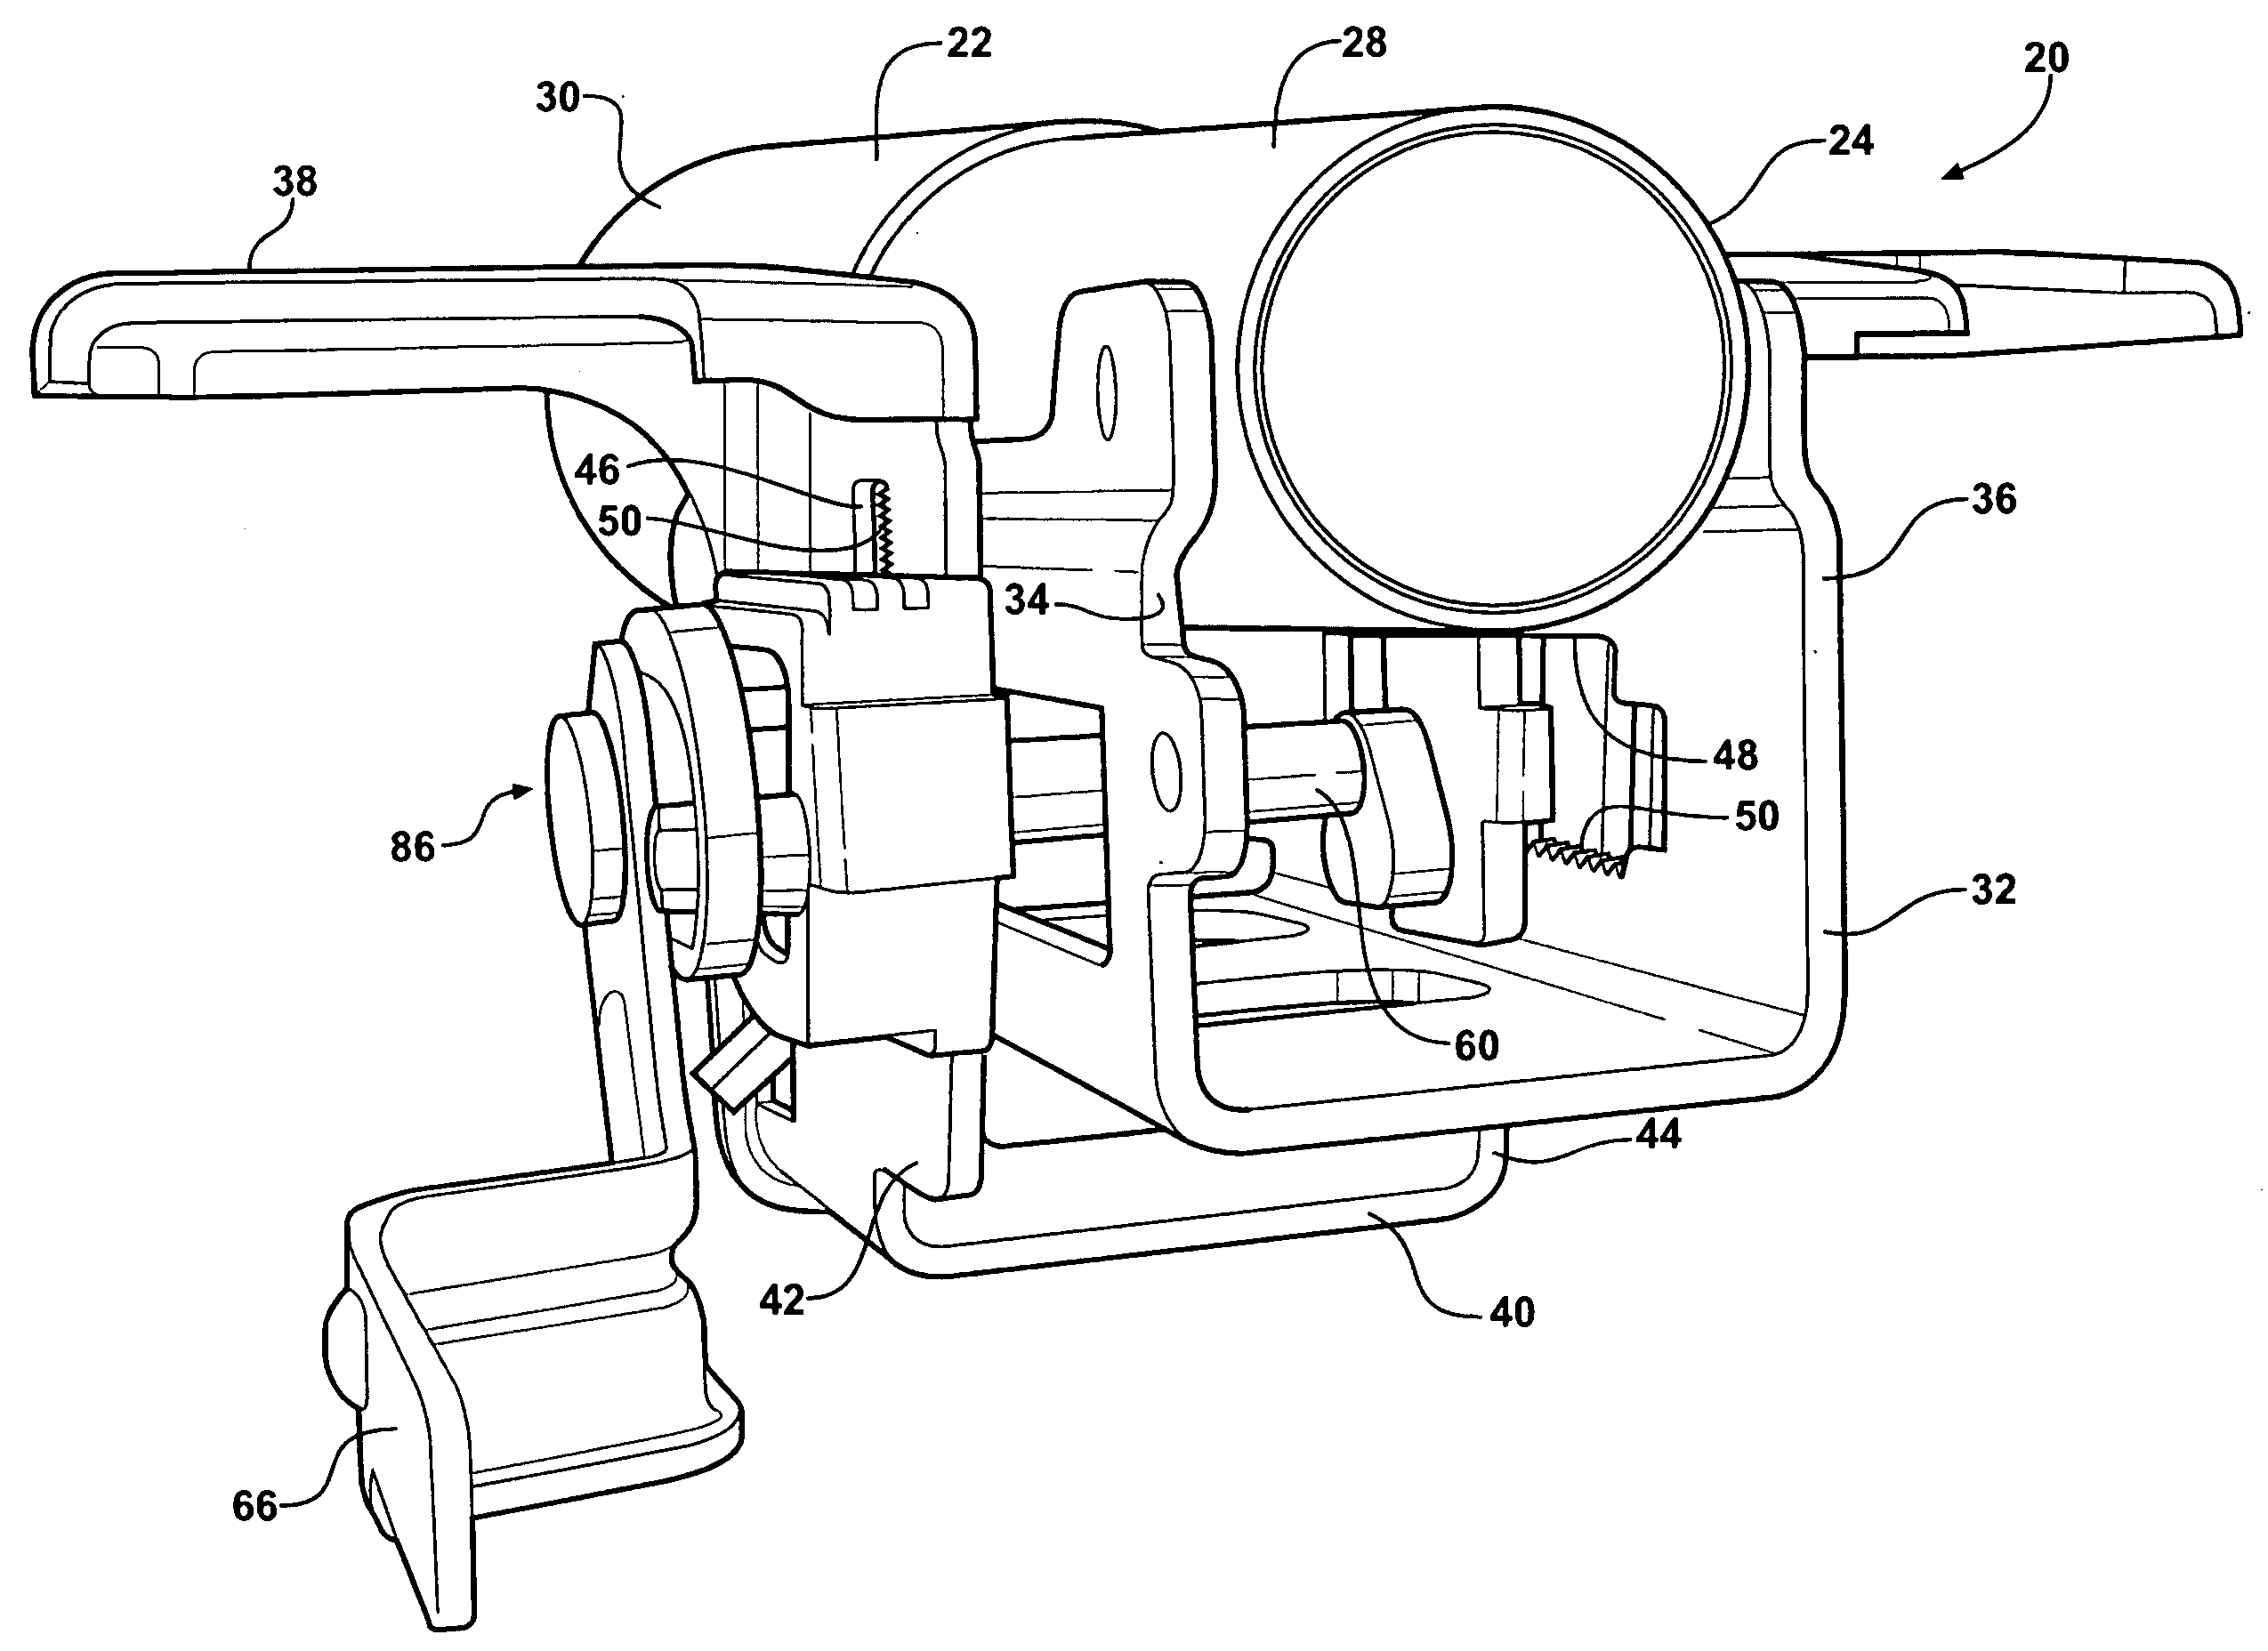 Locking mechanism for an adjustable steering column having impact teeth